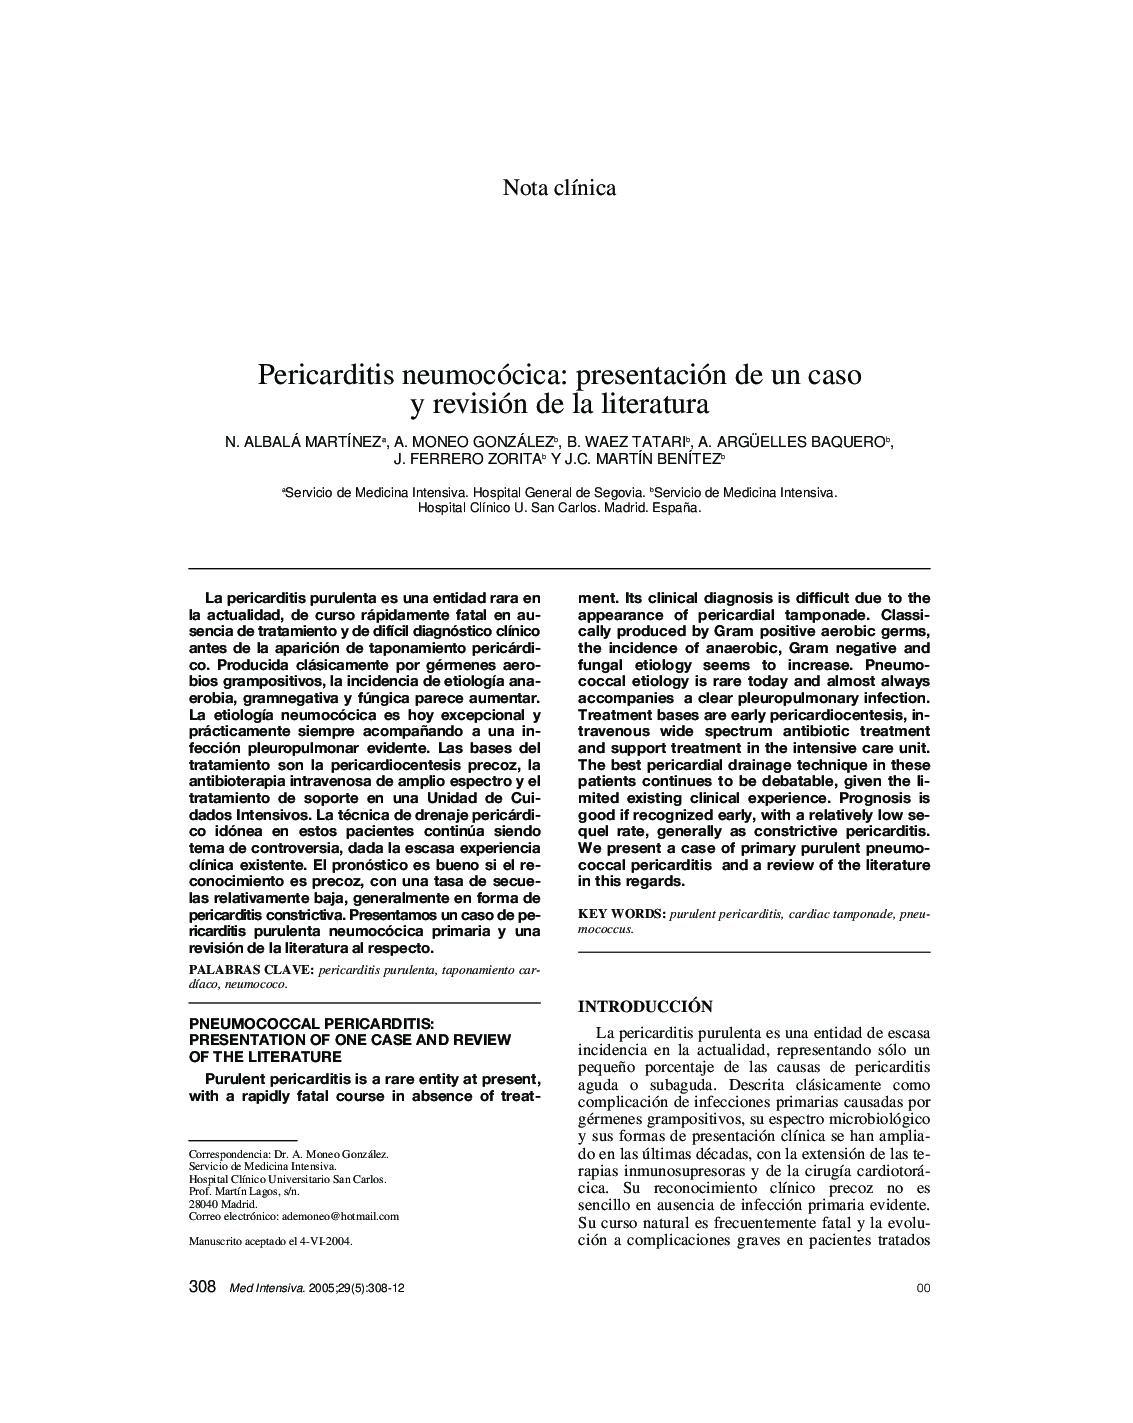 Pericarditis neumocócica: presentación de un caso y revisión de la literatura